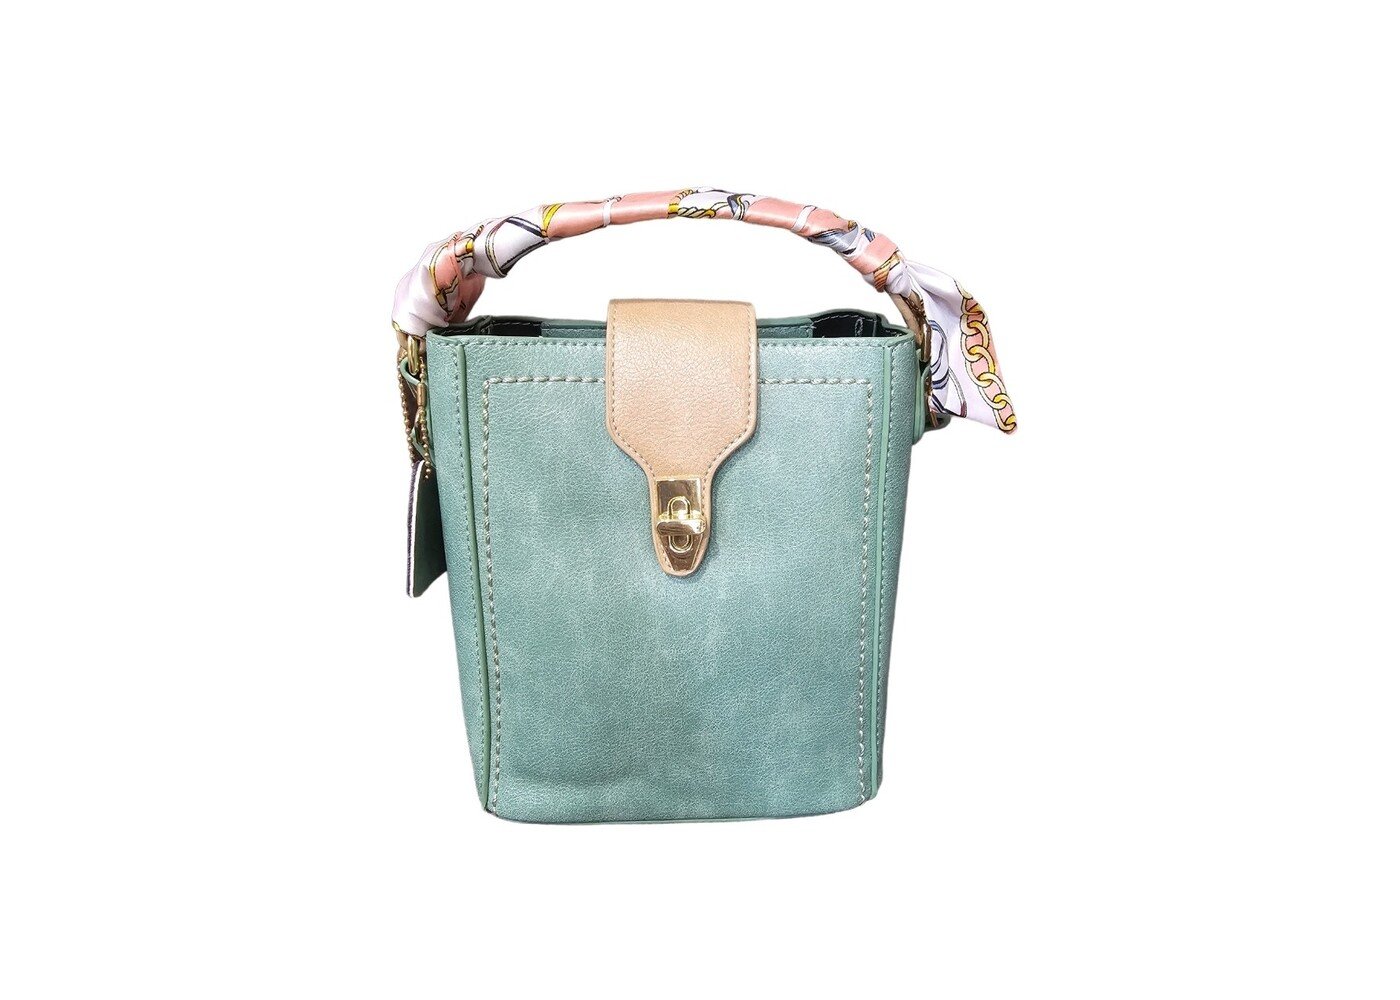 Zeneeba Munro leather handbag